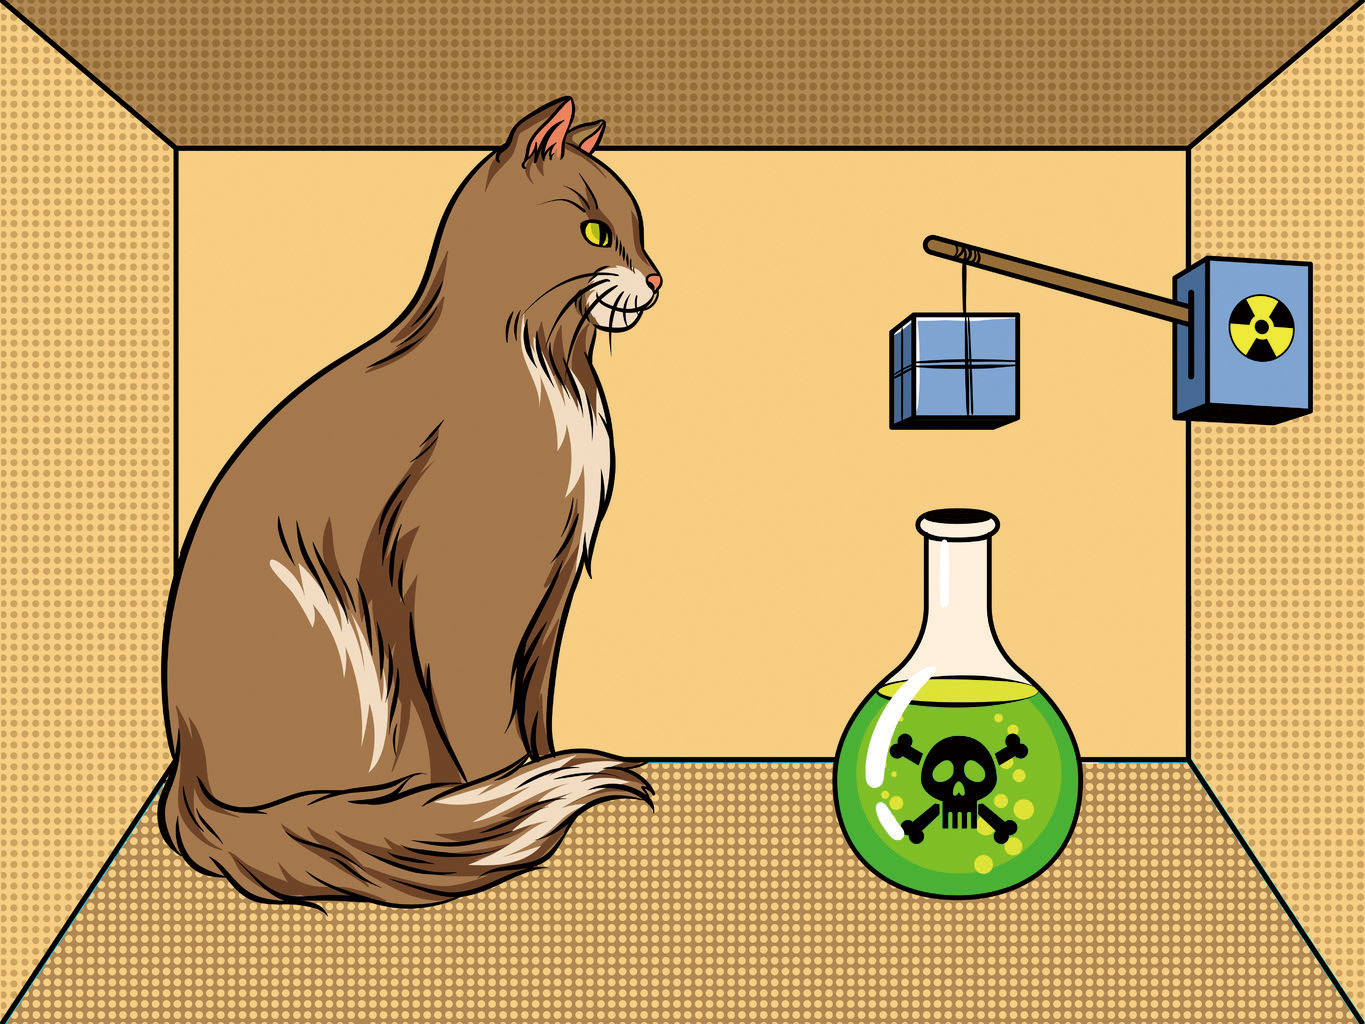 「薛丁格貓」的實驗，證明人類的意識可以改變物質世界的狀態。